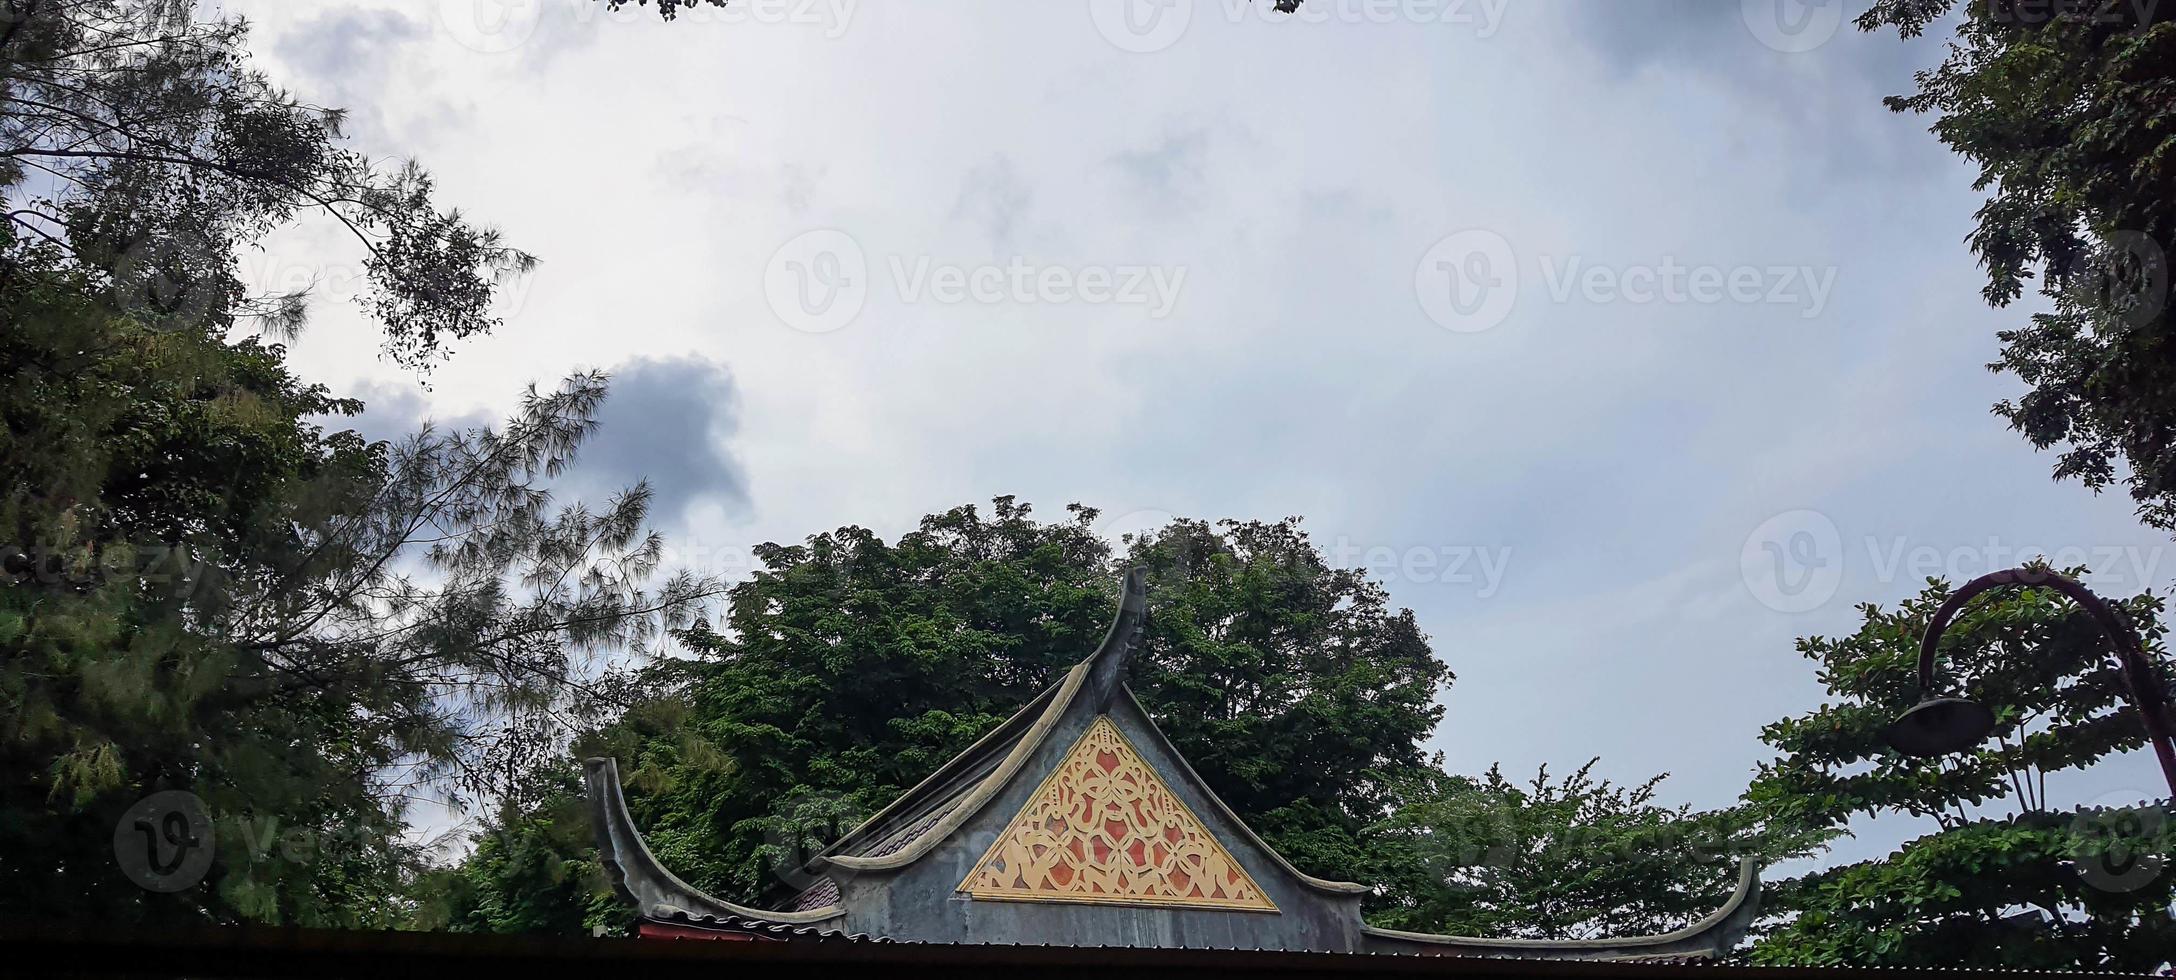 esta es una foto del techo del templo sam poo kong en semarang.